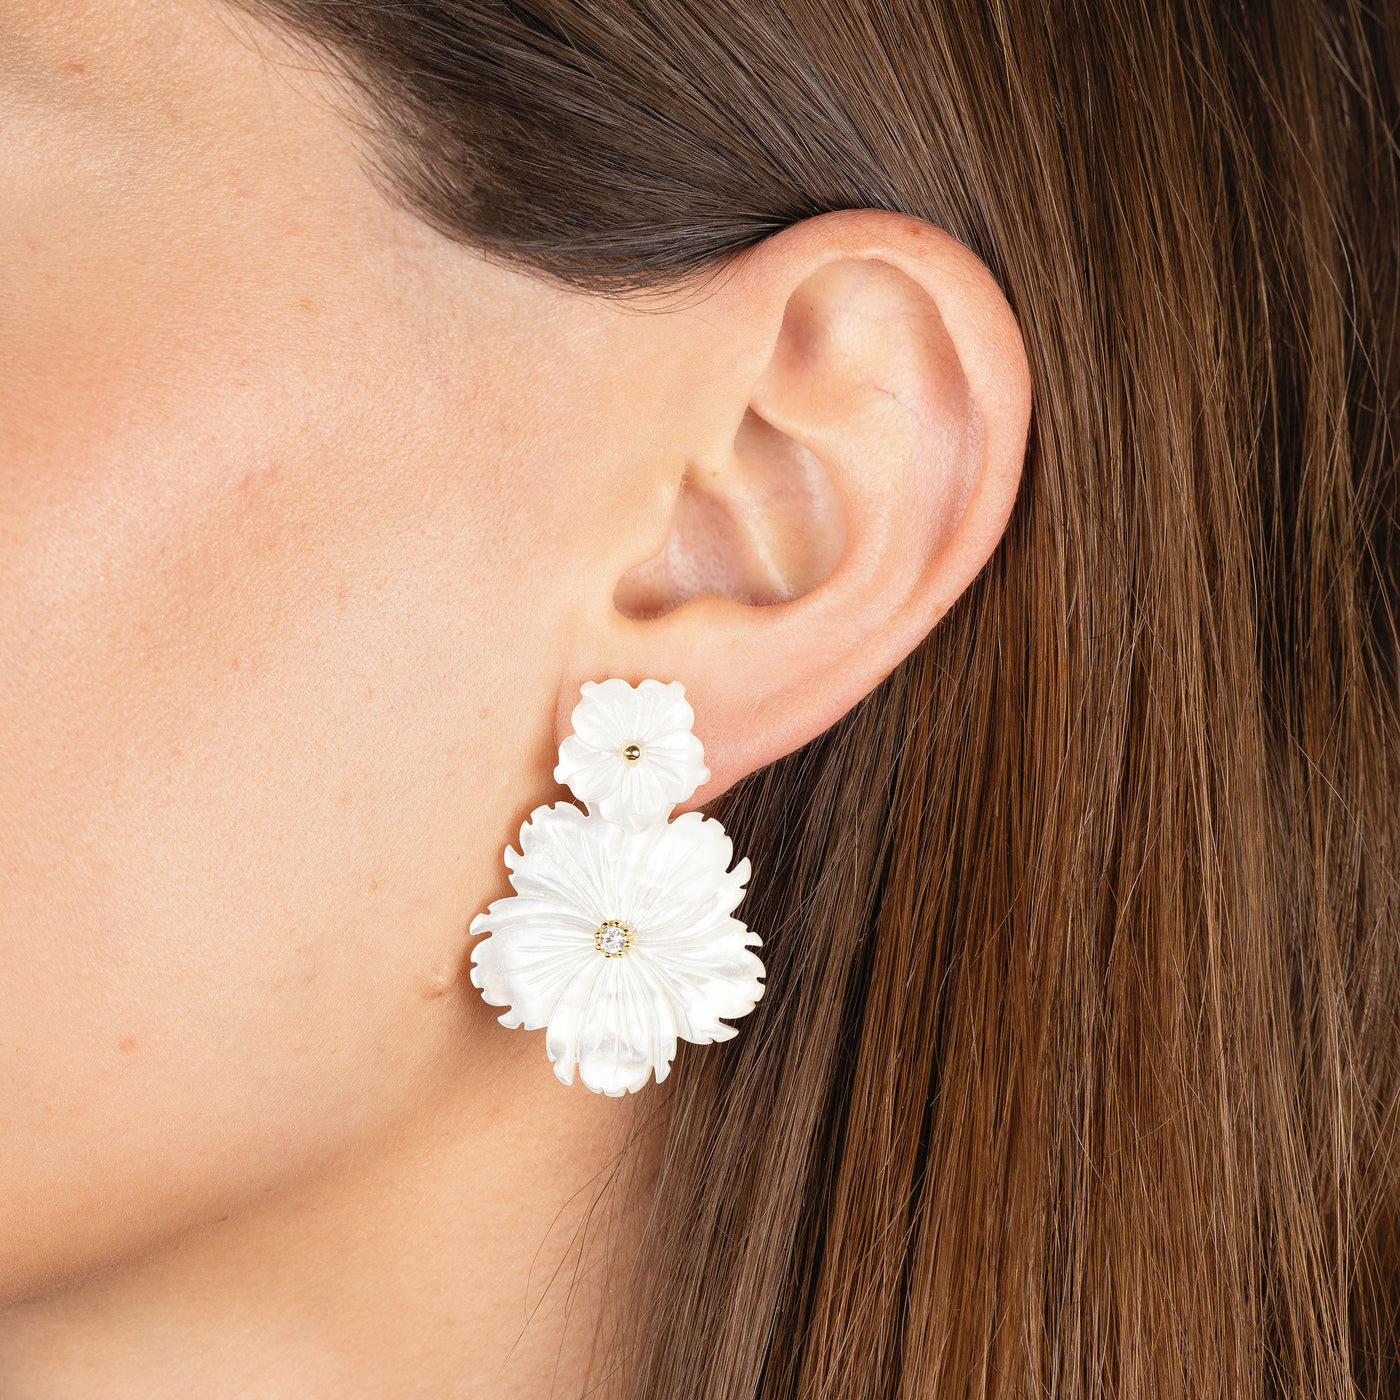 Poppy Mother of Pearl Double Flower Earrings